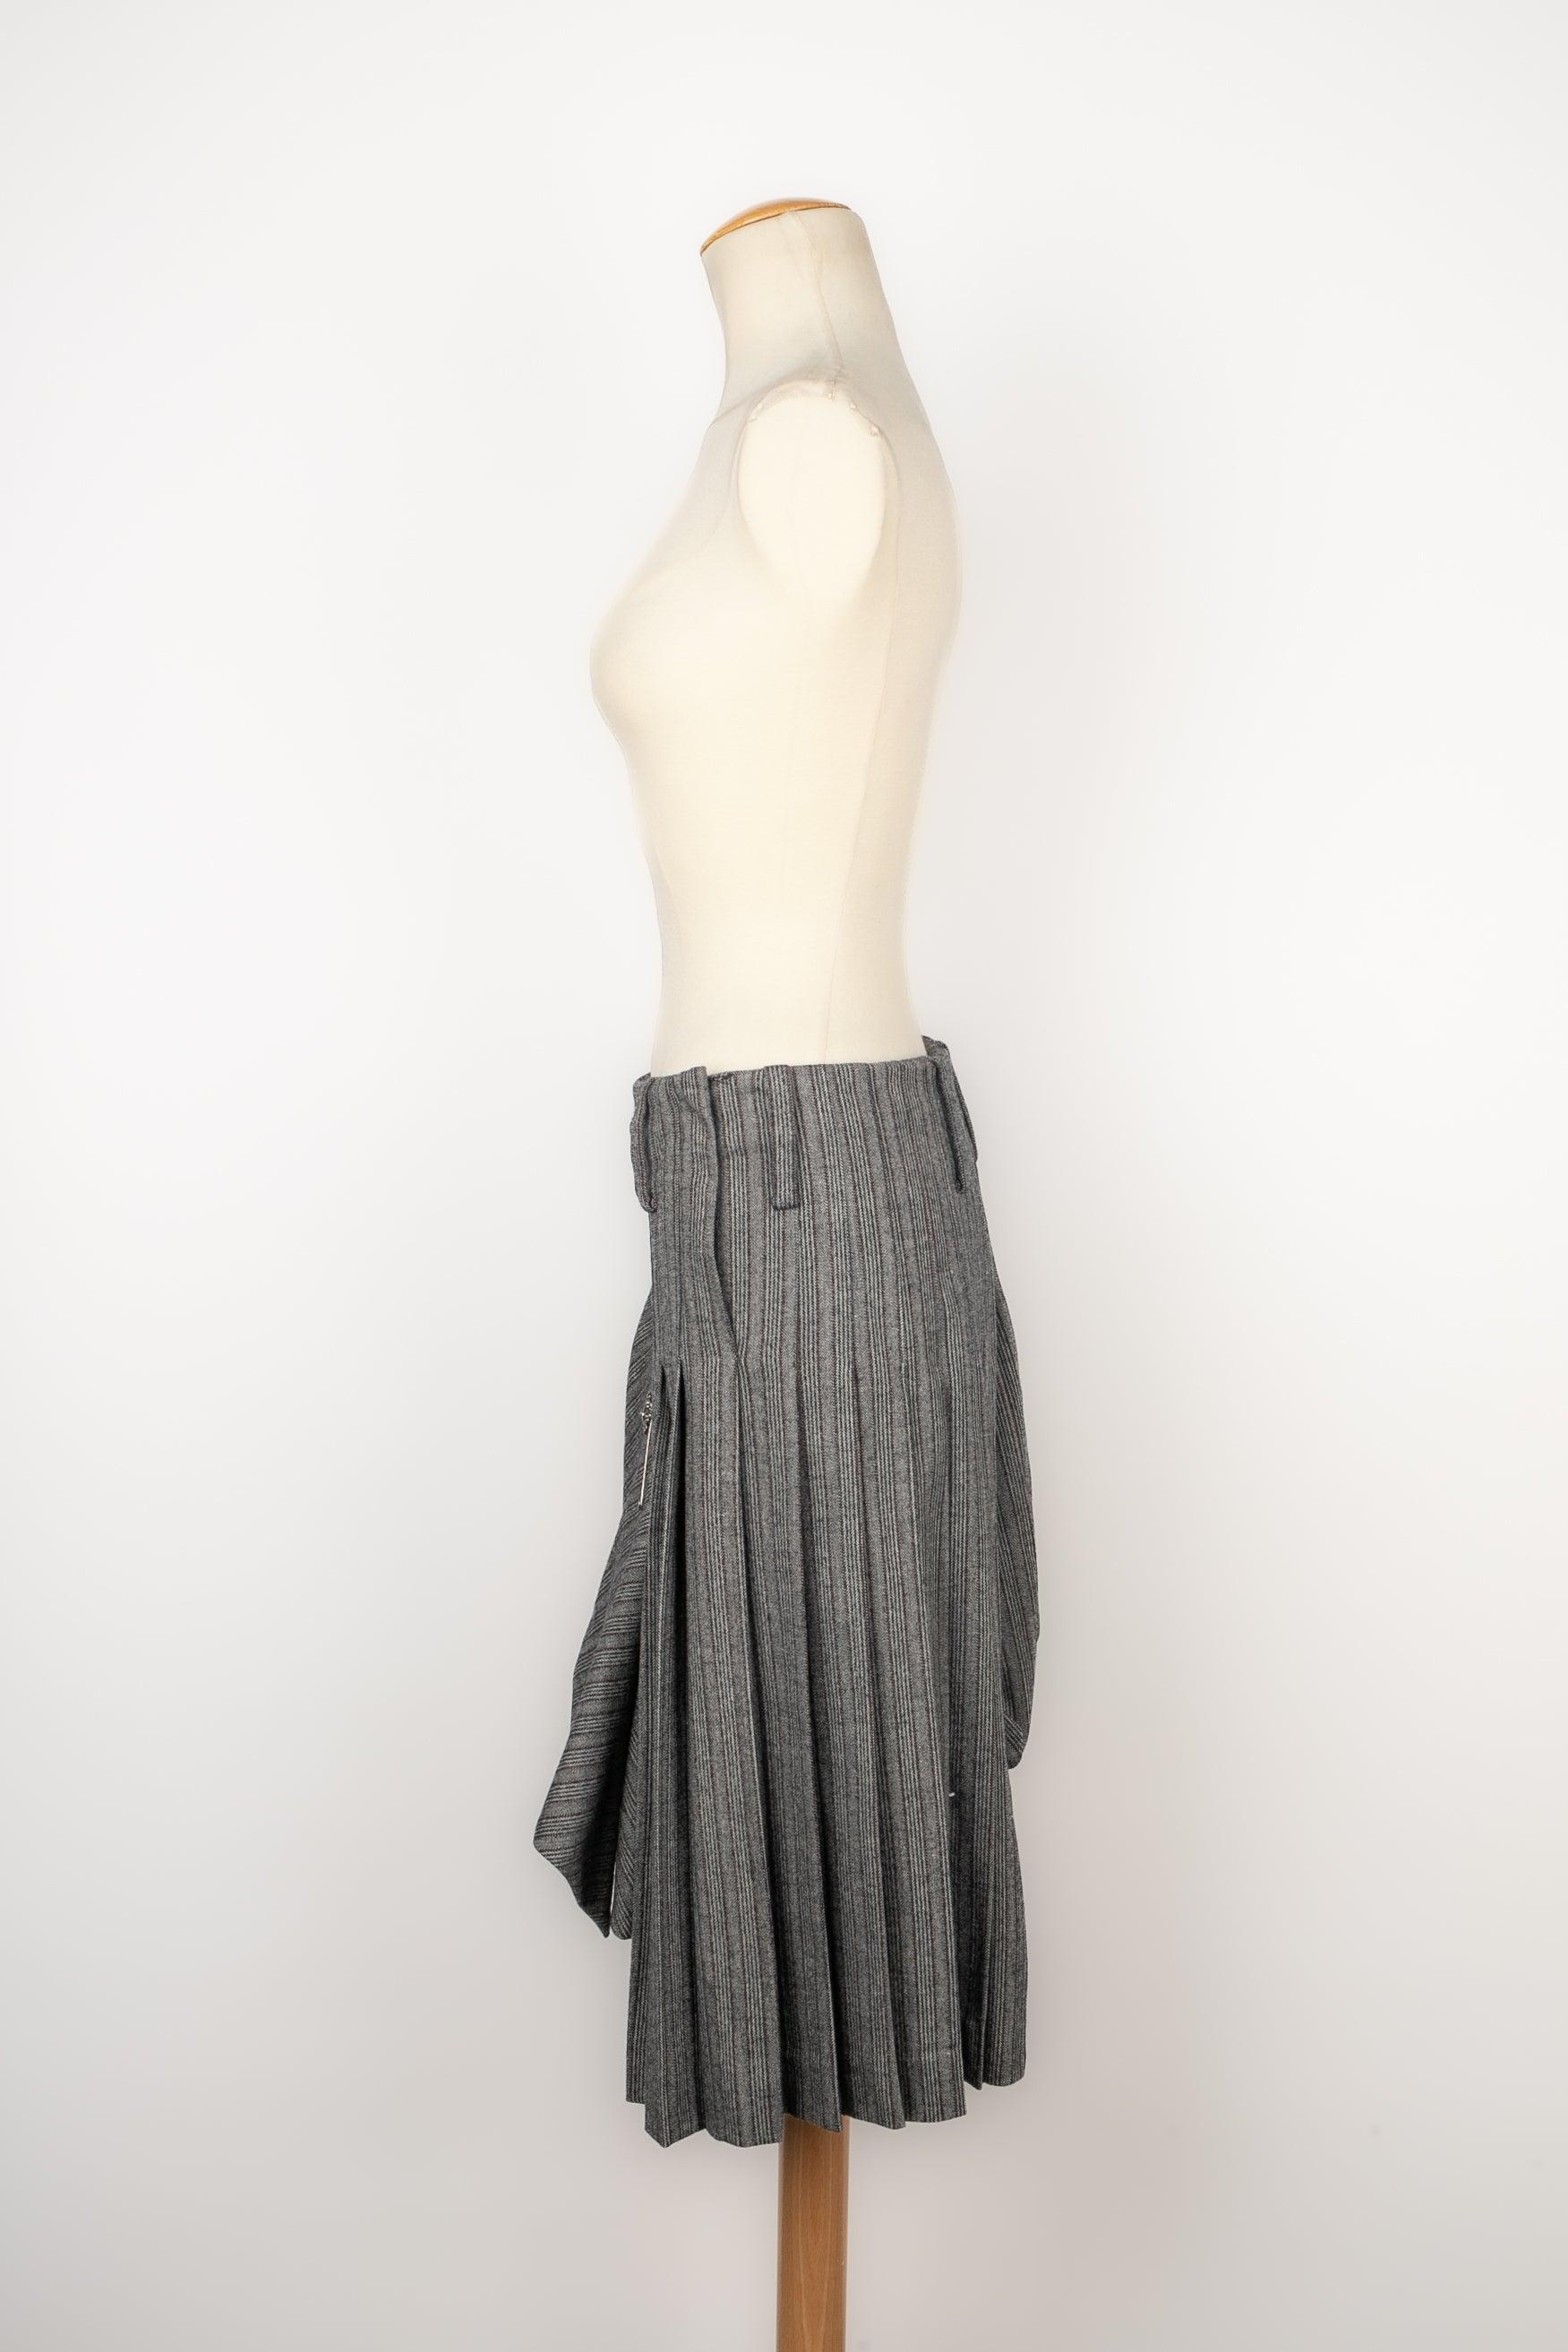 Alexander Mcqueen Blended Wool Skirt, 2006 For Sale 1